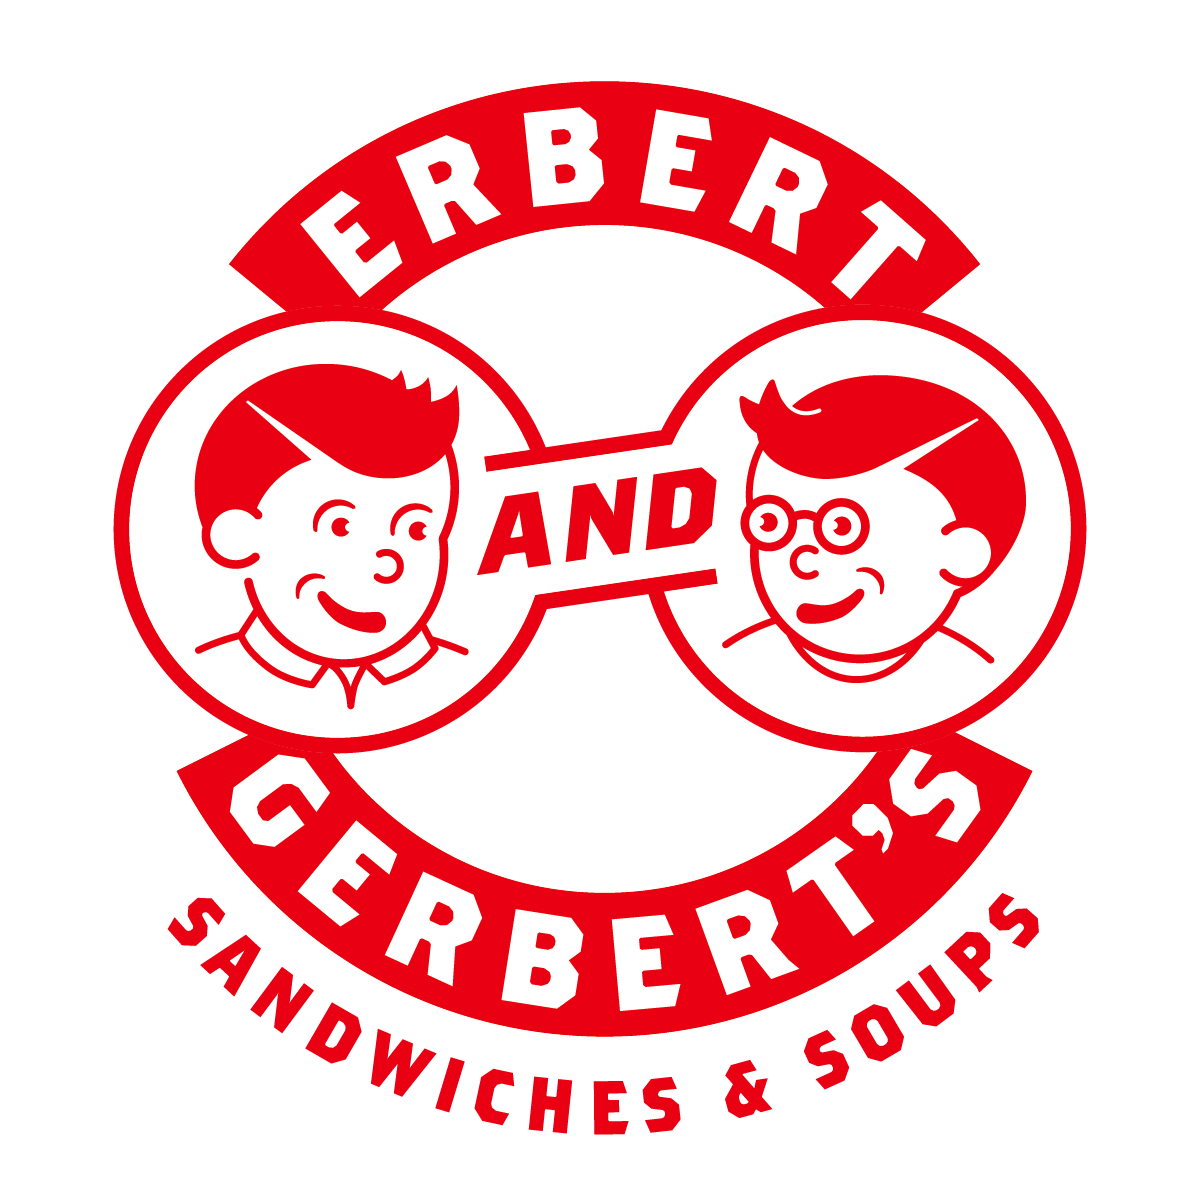 Erbert & Gerbert's Logo